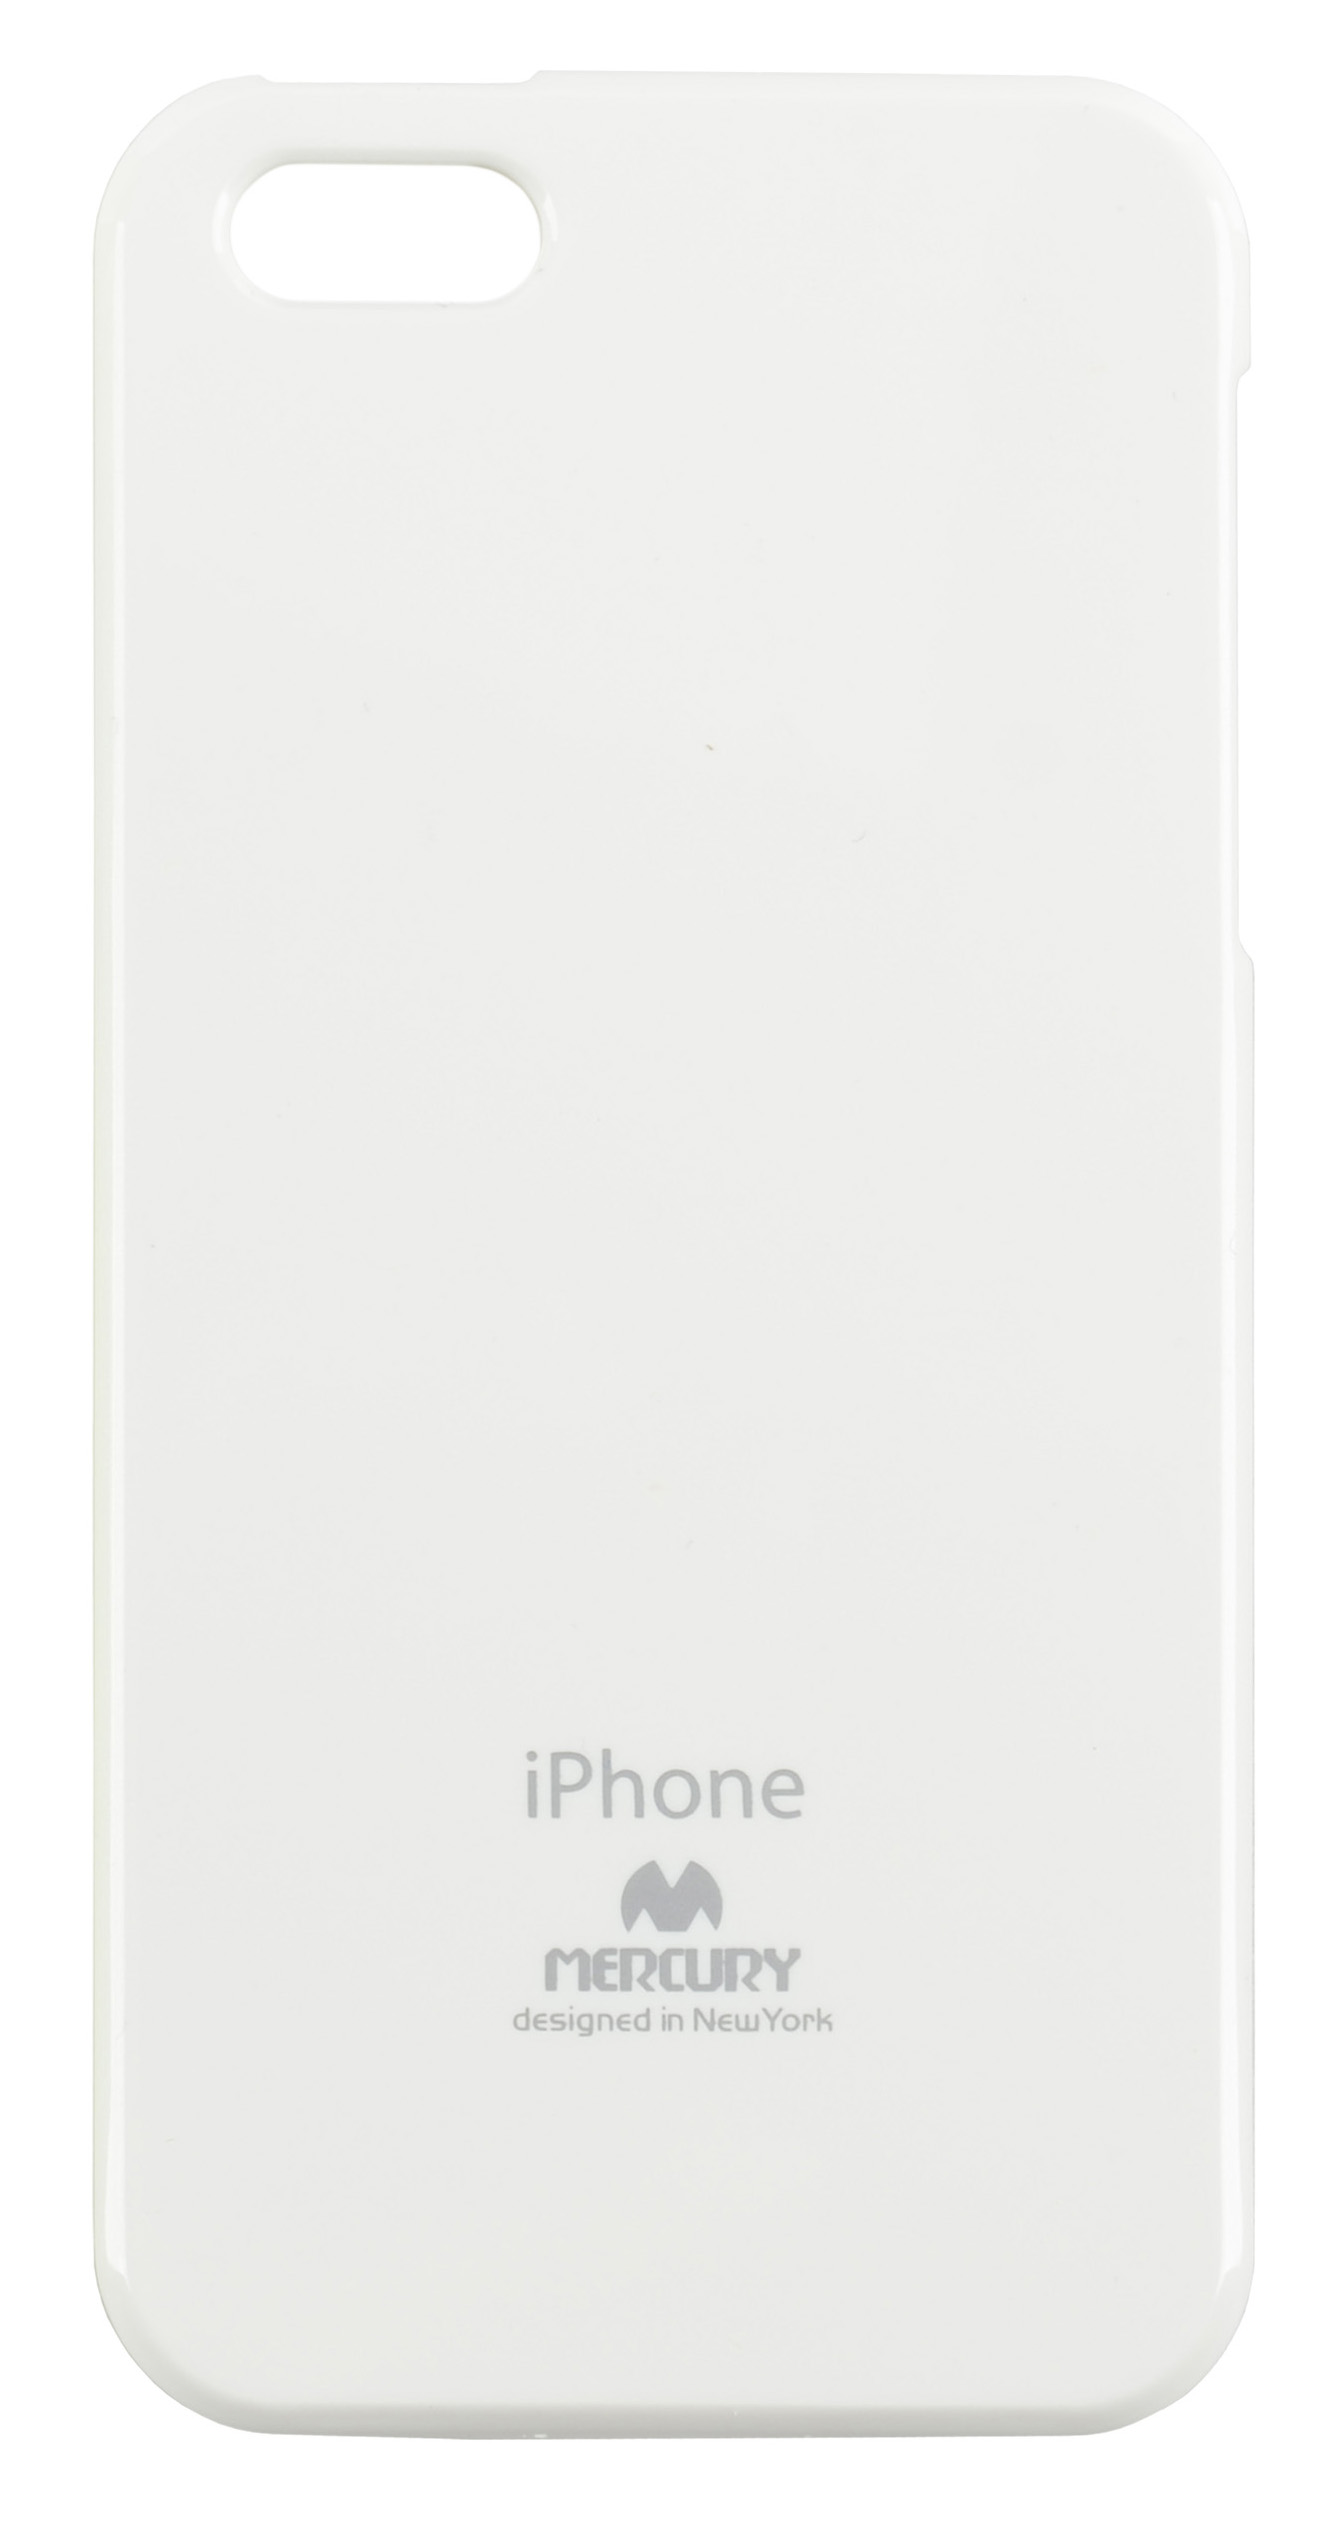 Silikonové pouzdro,obal,kryt na iPhone 5S Mercury Jelly bílé